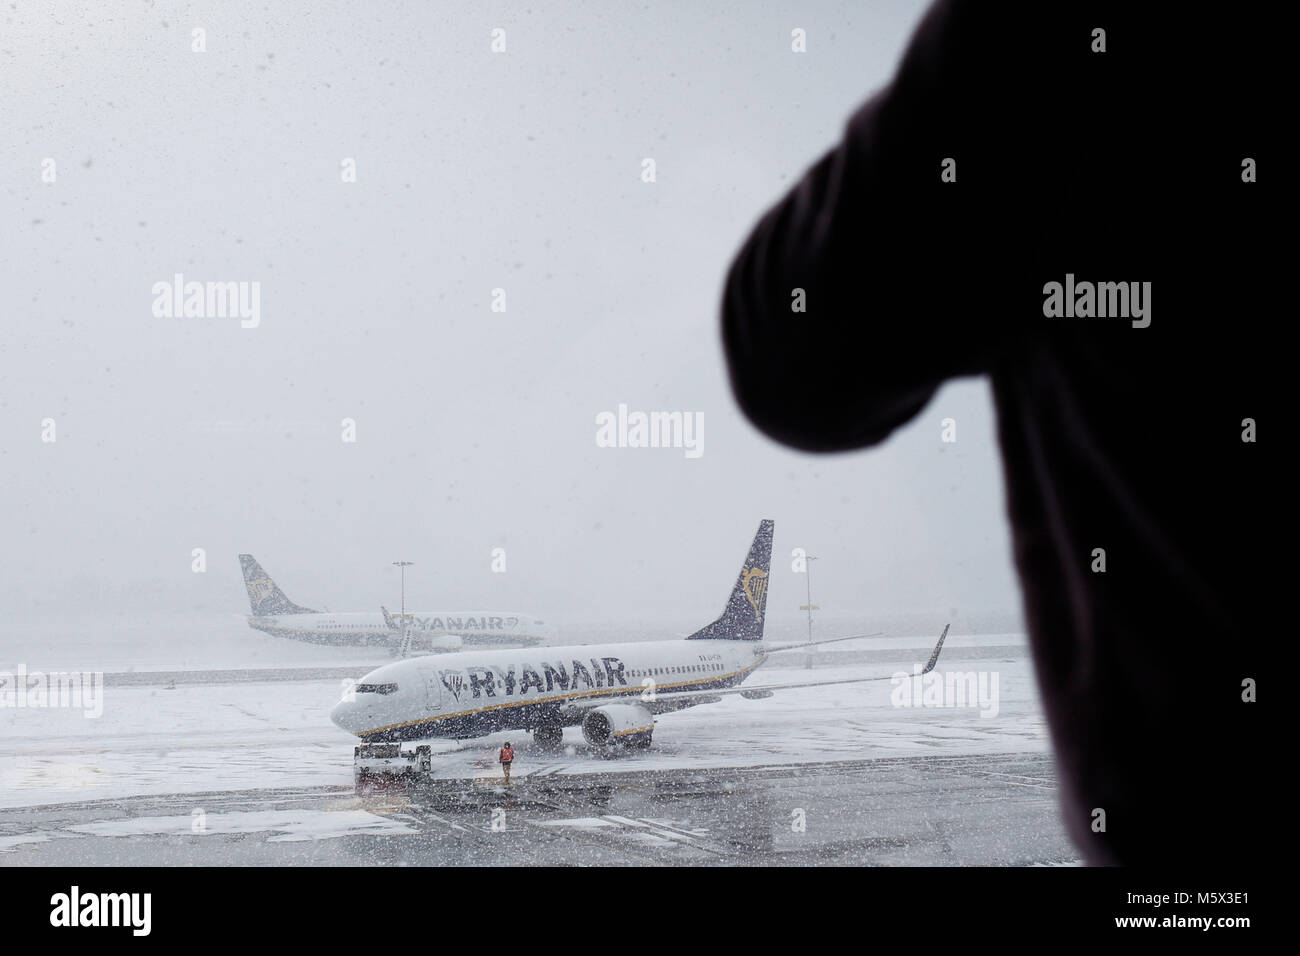 Charleroi, Belgique. 26 février 2018. Les avions sur la piste sont couverts par la neige durant une chute de neige à l'aéroport de Charleroi Bruxelles Sud. Alexandros Michailidis/Alamy Live News Banque D'Images